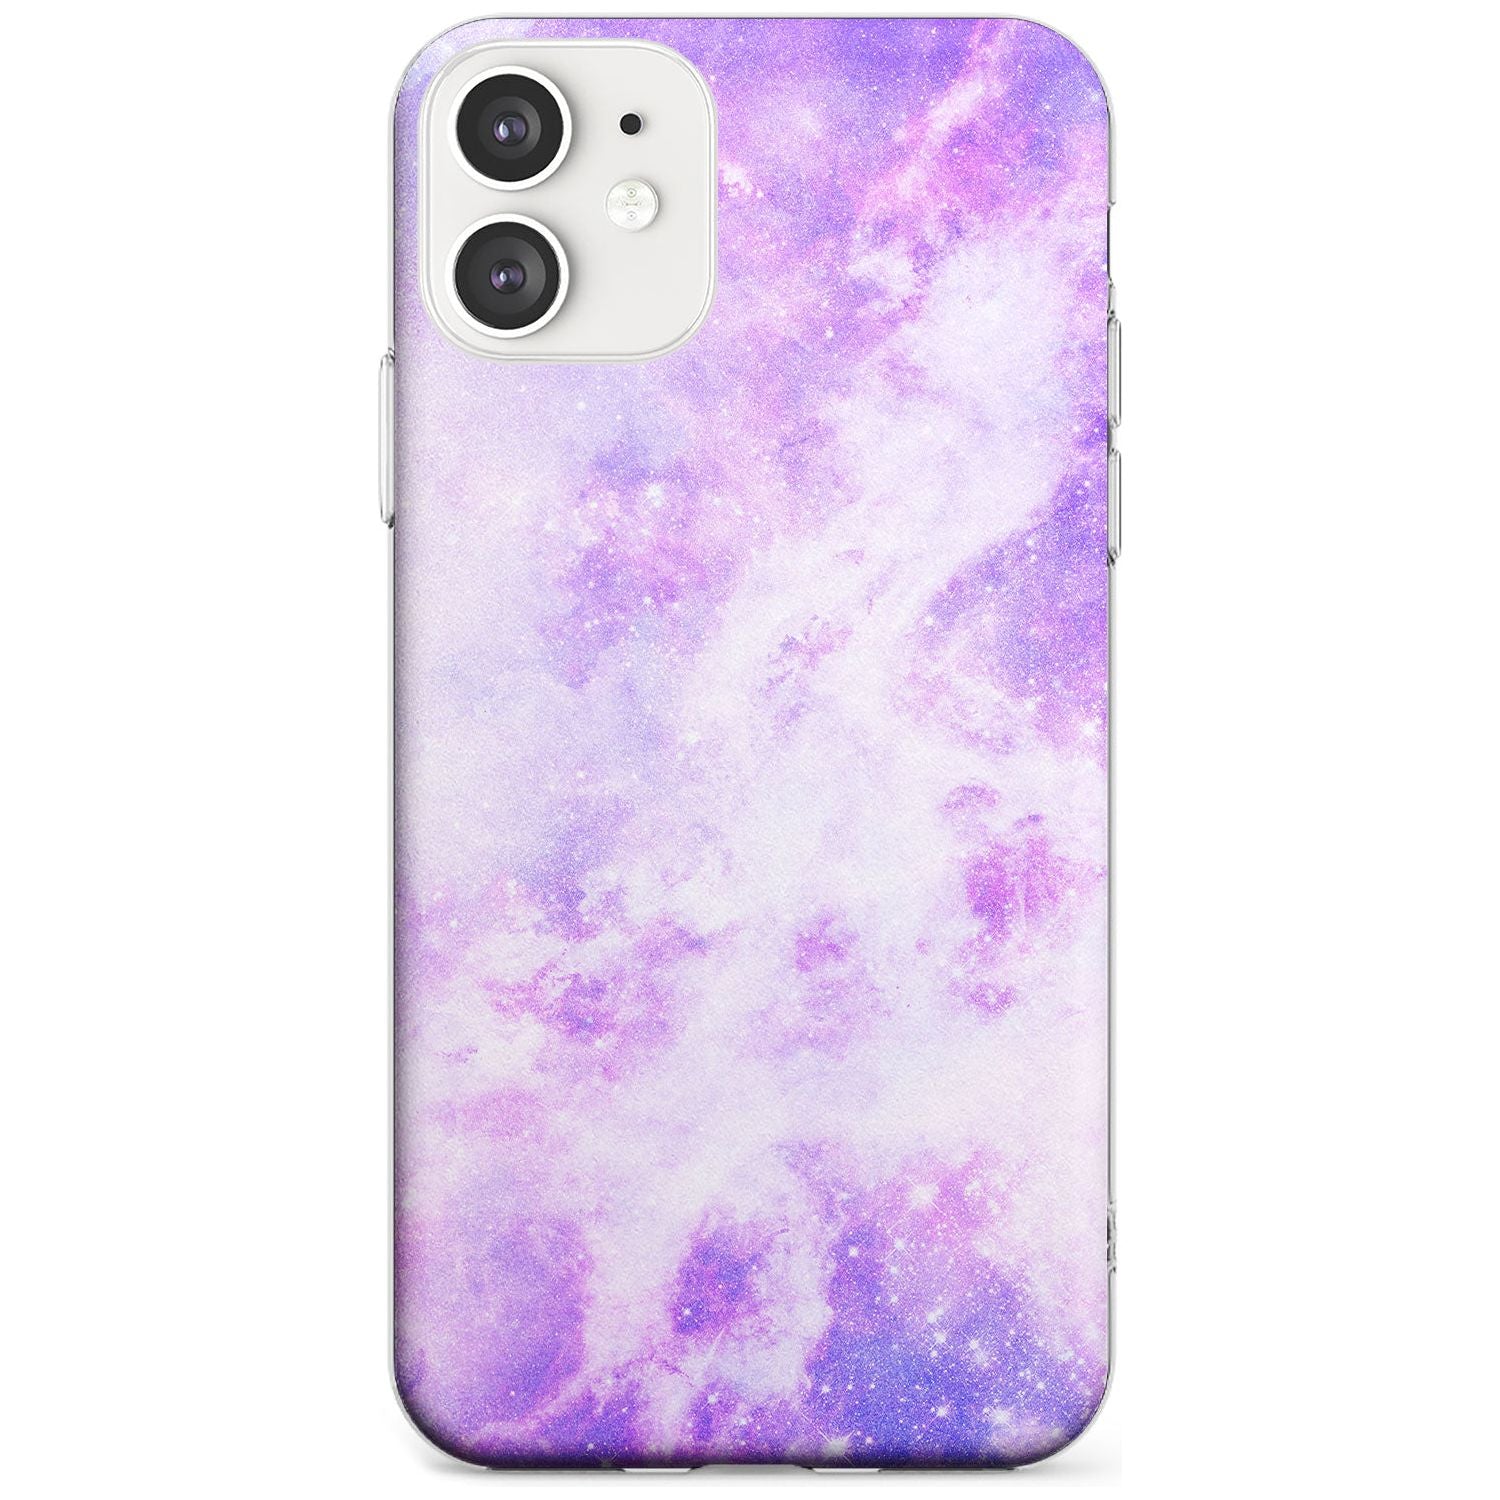 Purple Galaxy Pattern Design Slim TPU Phone Case for iPhone 11